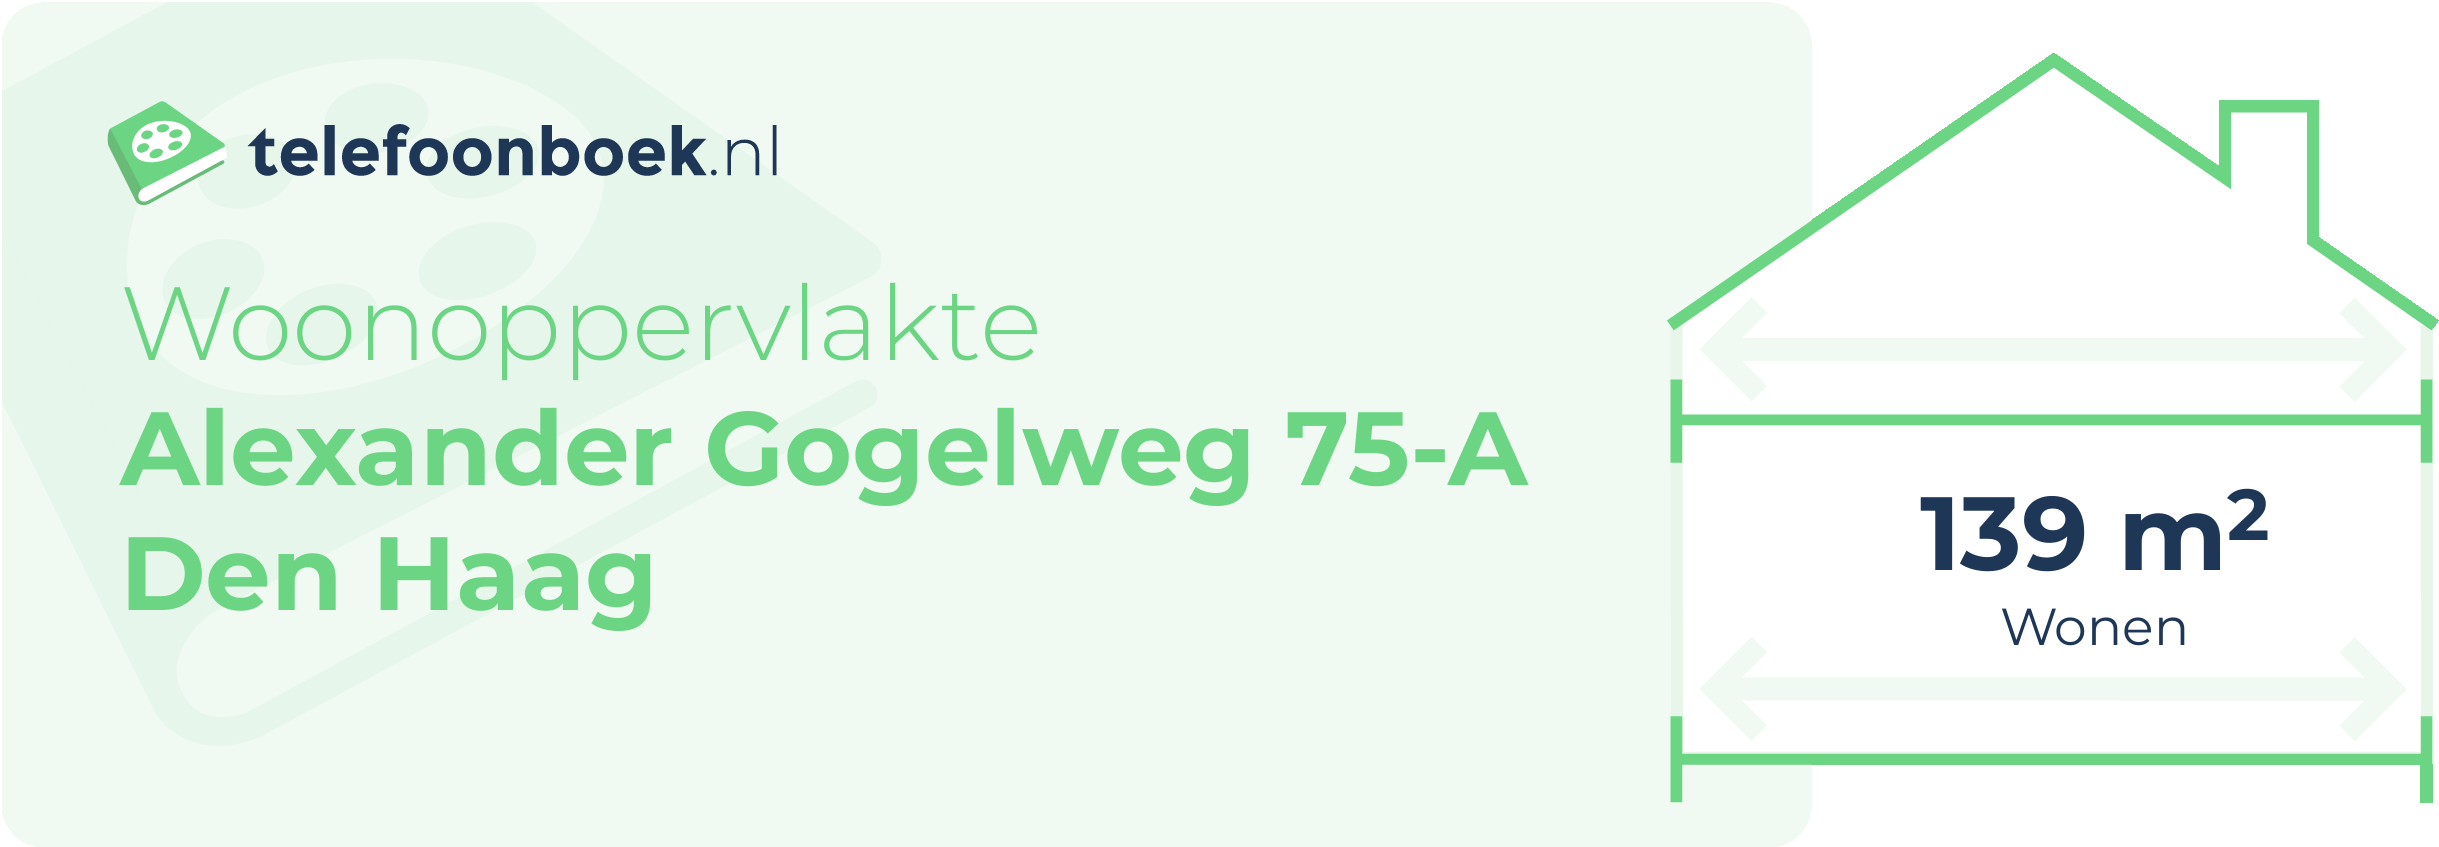 Woonoppervlakte Alexander Gogelweg 75-A Den Haag